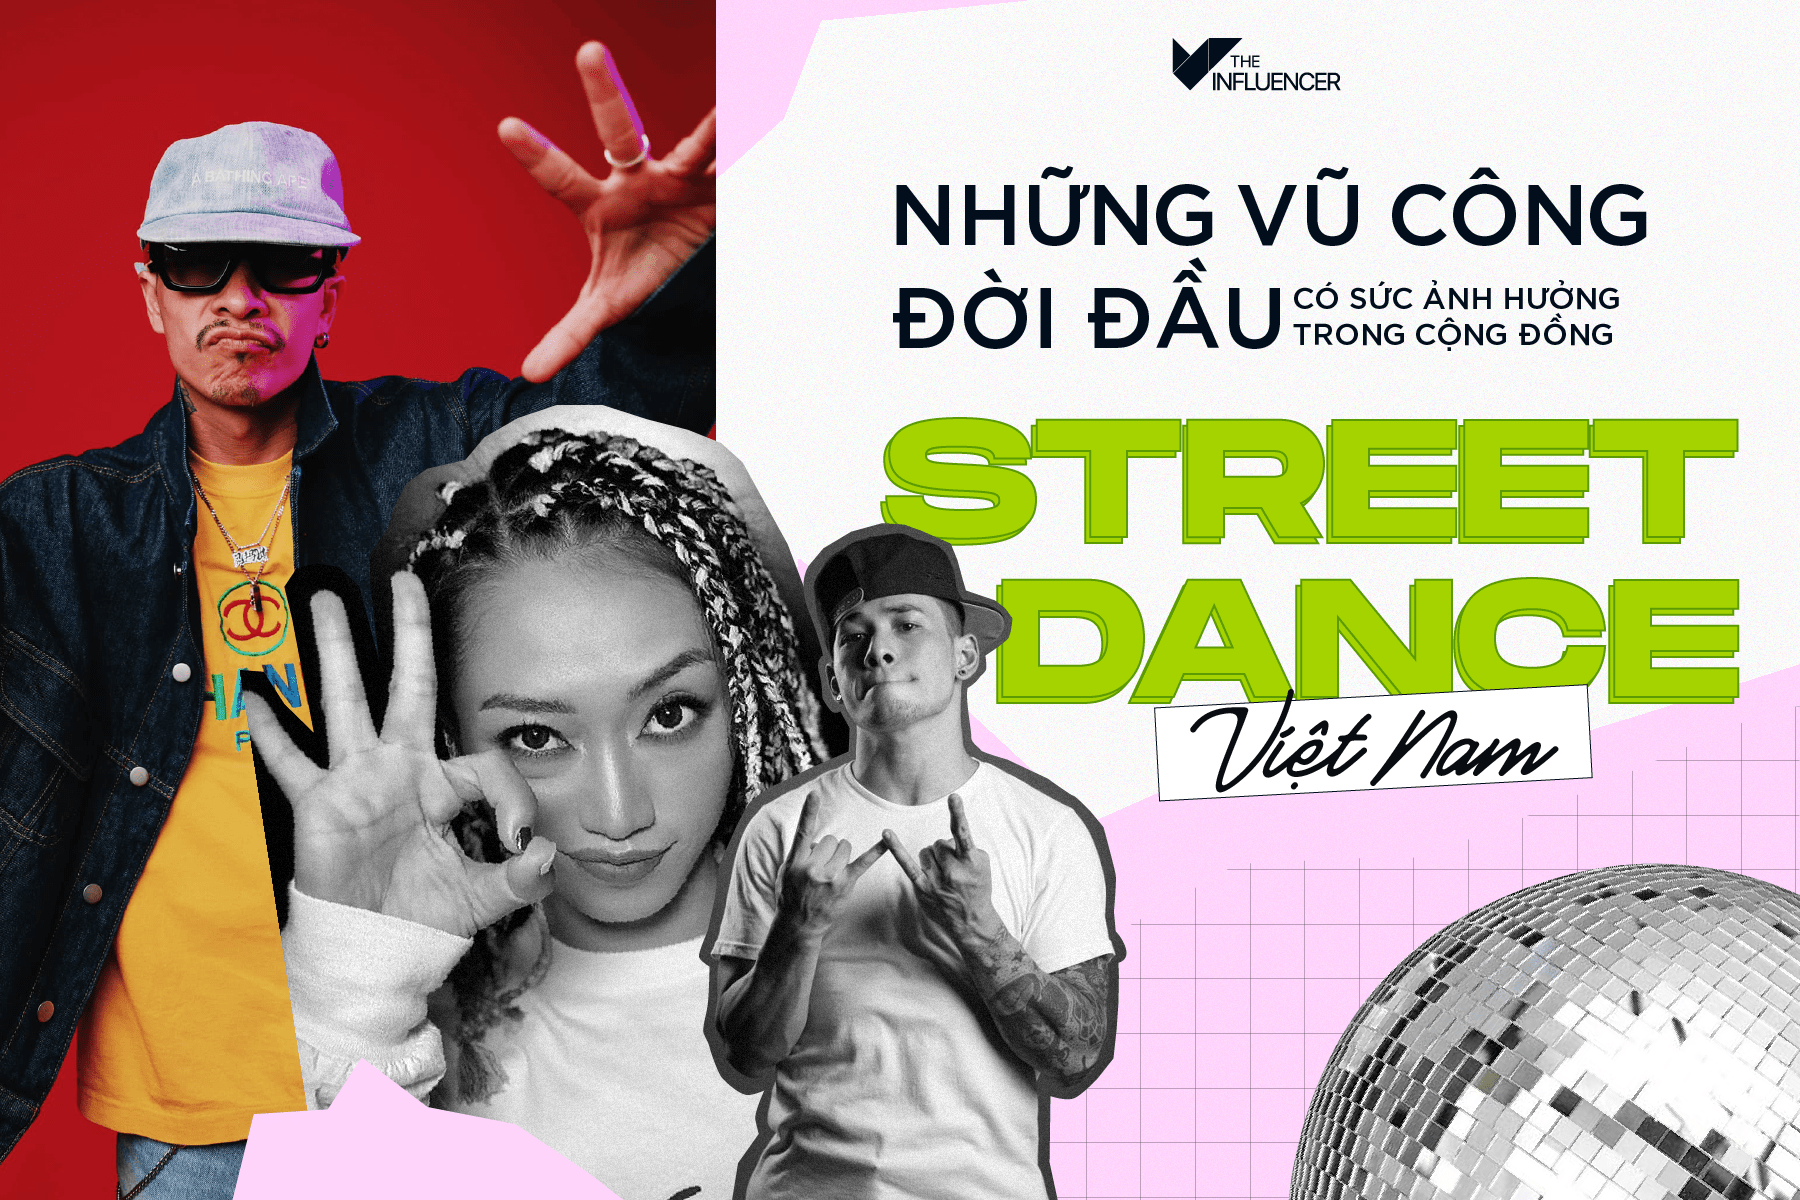 #Toplist những vũ công đời đầu có sức ảnh hưởng trong cộng đồng Street Dance Việt Nam